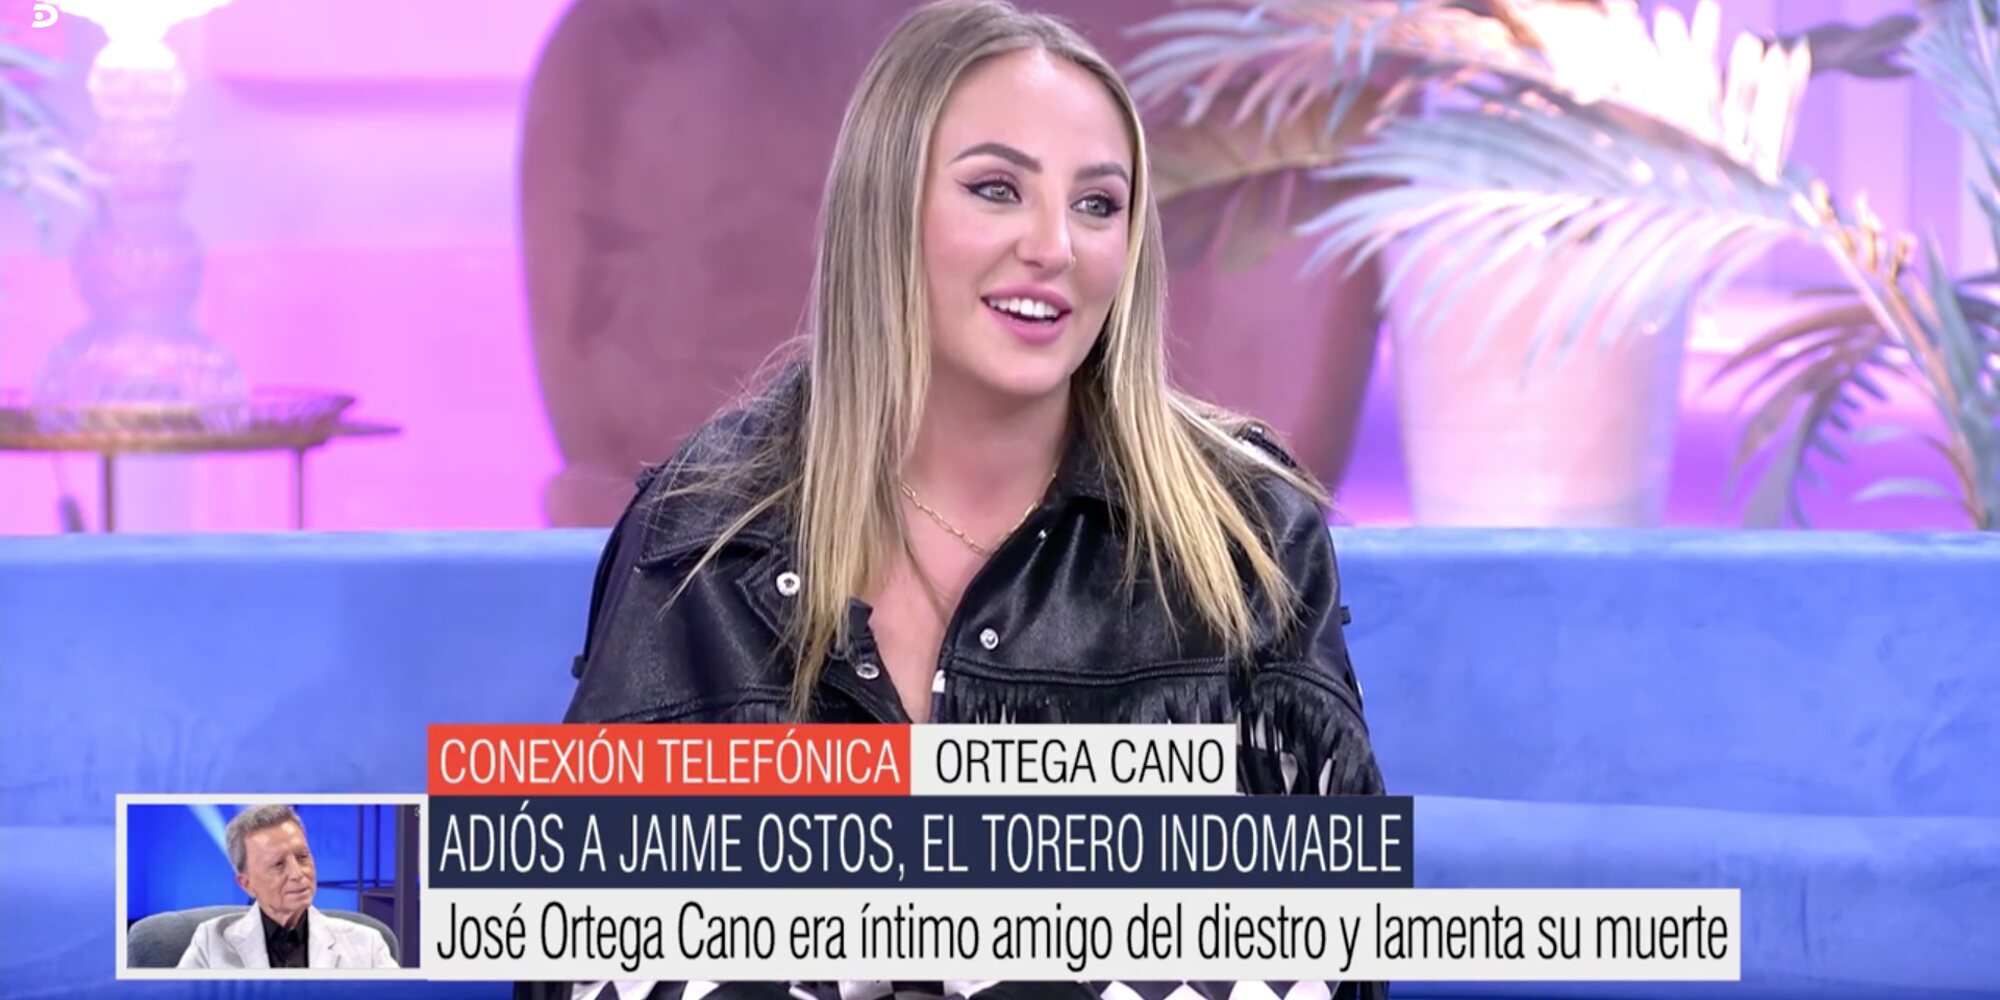 José Ortega Cano emociona a Rocío Flores con sus palabras en directo: "Mi niña, mi Rocío"